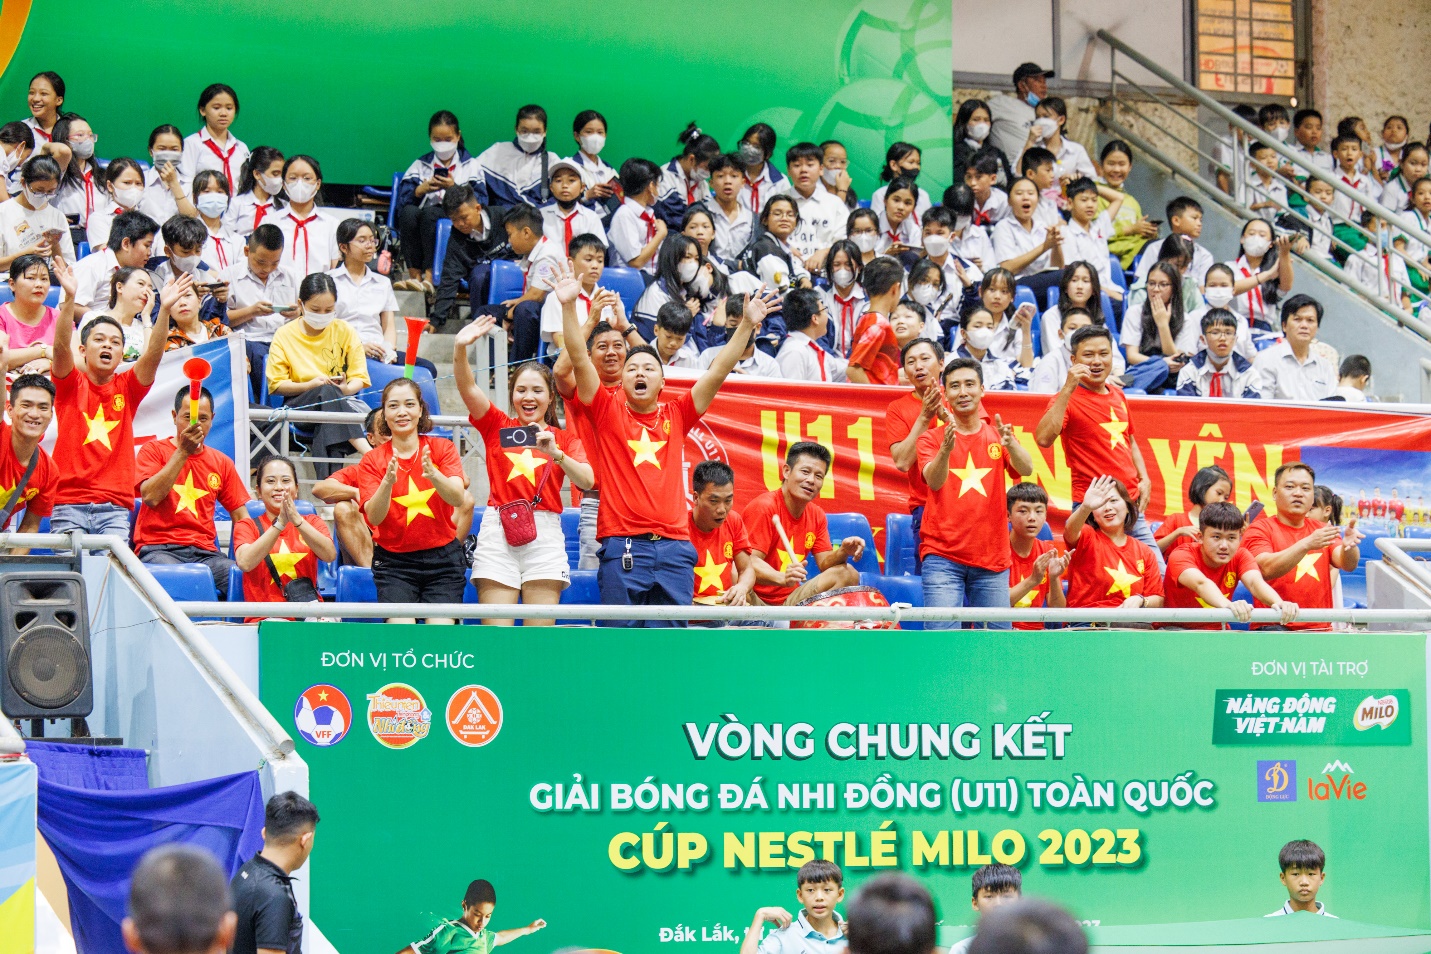 Bế mạc Giải bóng đá Nhi đồng (U11) toàn quốc, Nestlé MILO trao tặng 16 học bổng Có chí thì nên - Ảnh 3.